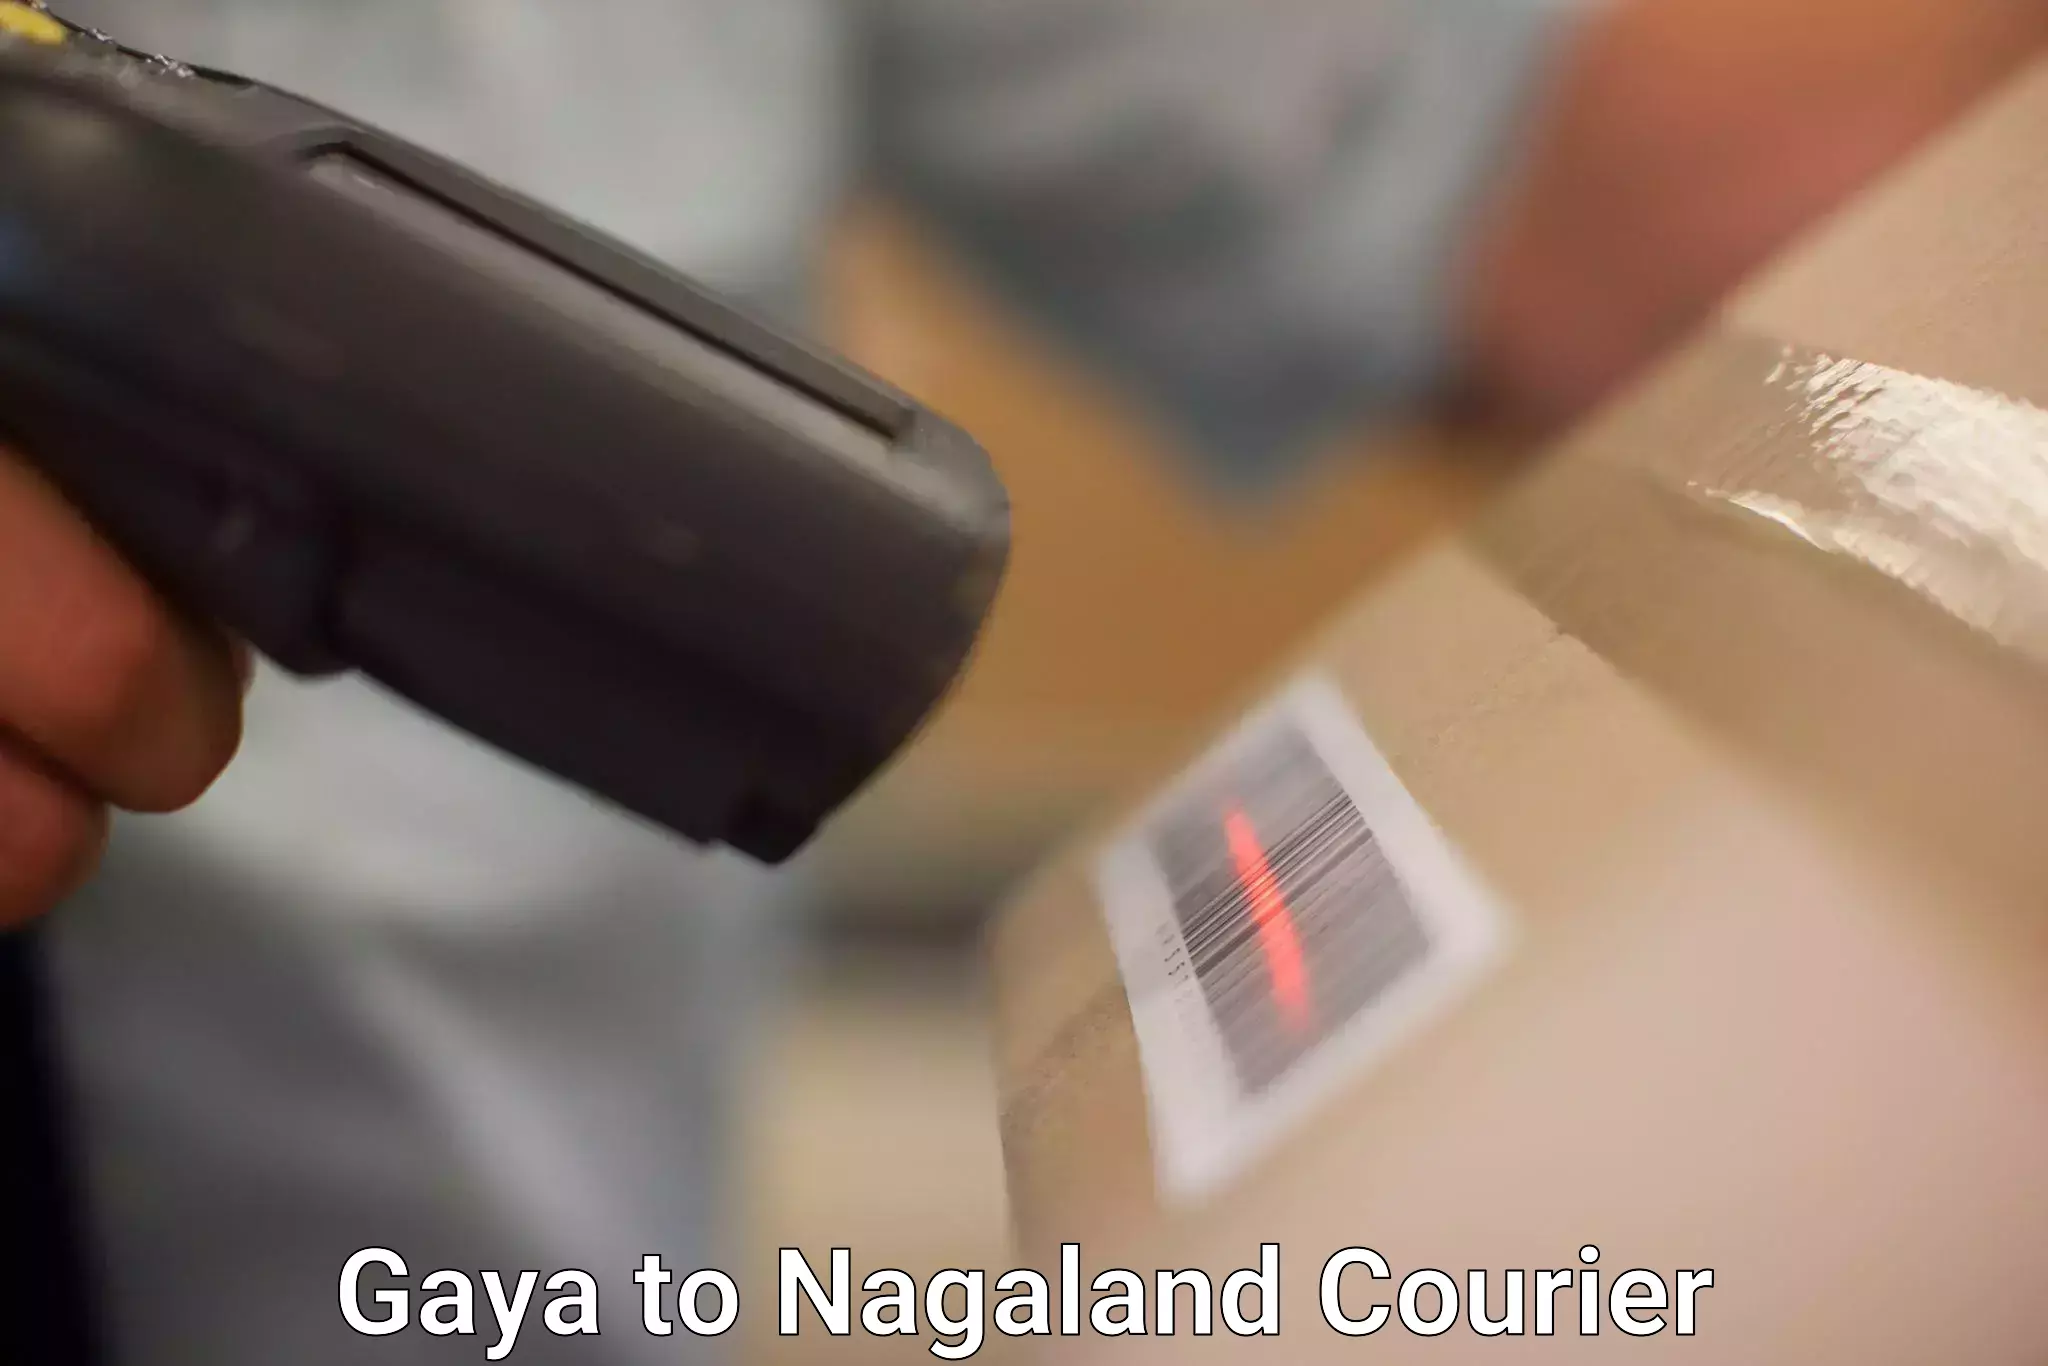 Courier service comparison Gaya to Dimapur